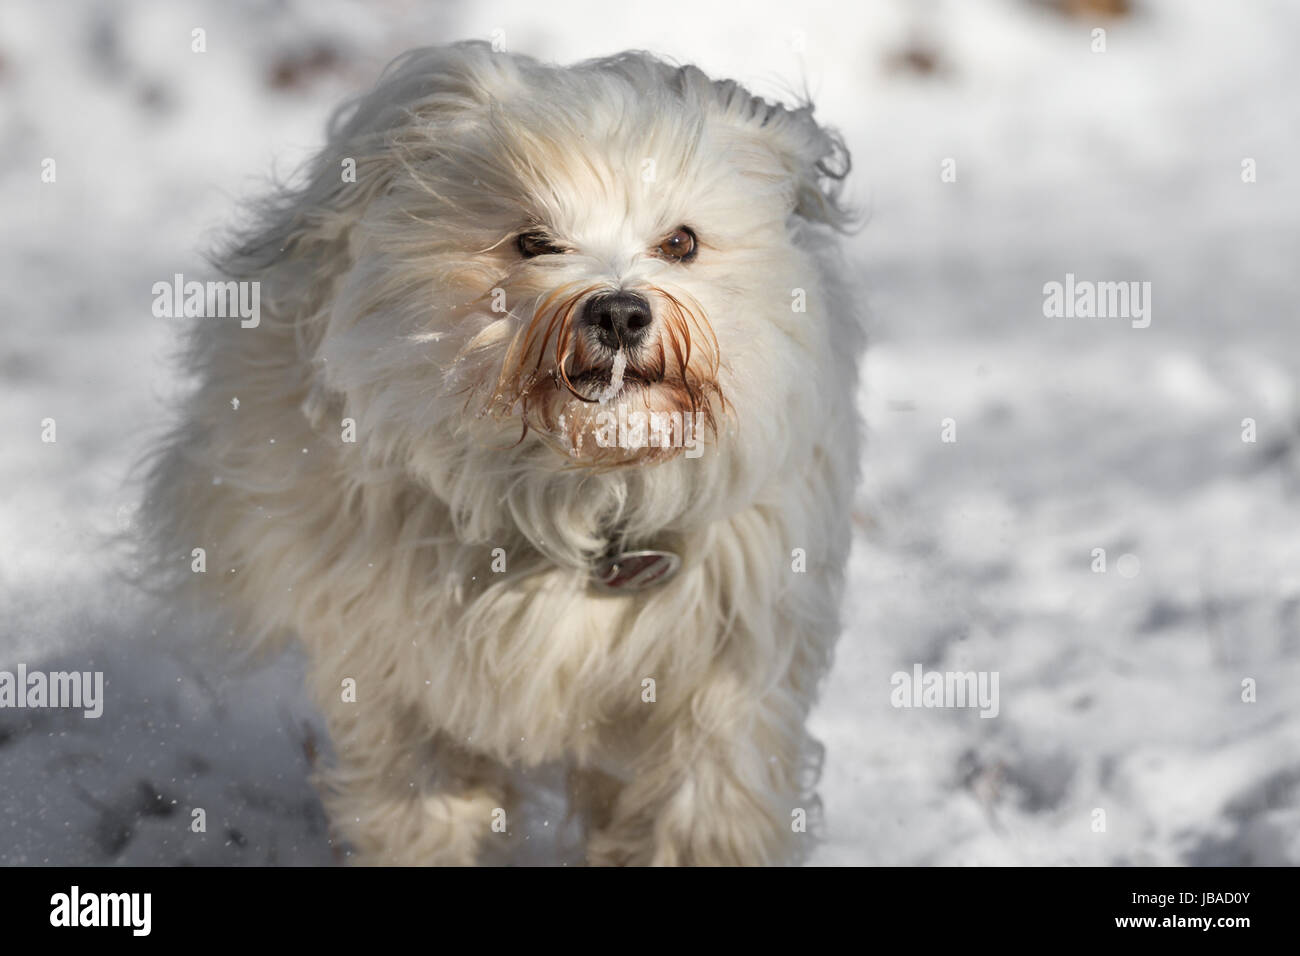 Ein Kleiner Langhaar Hund rennt schnell durch den Schnee. Stock Photo